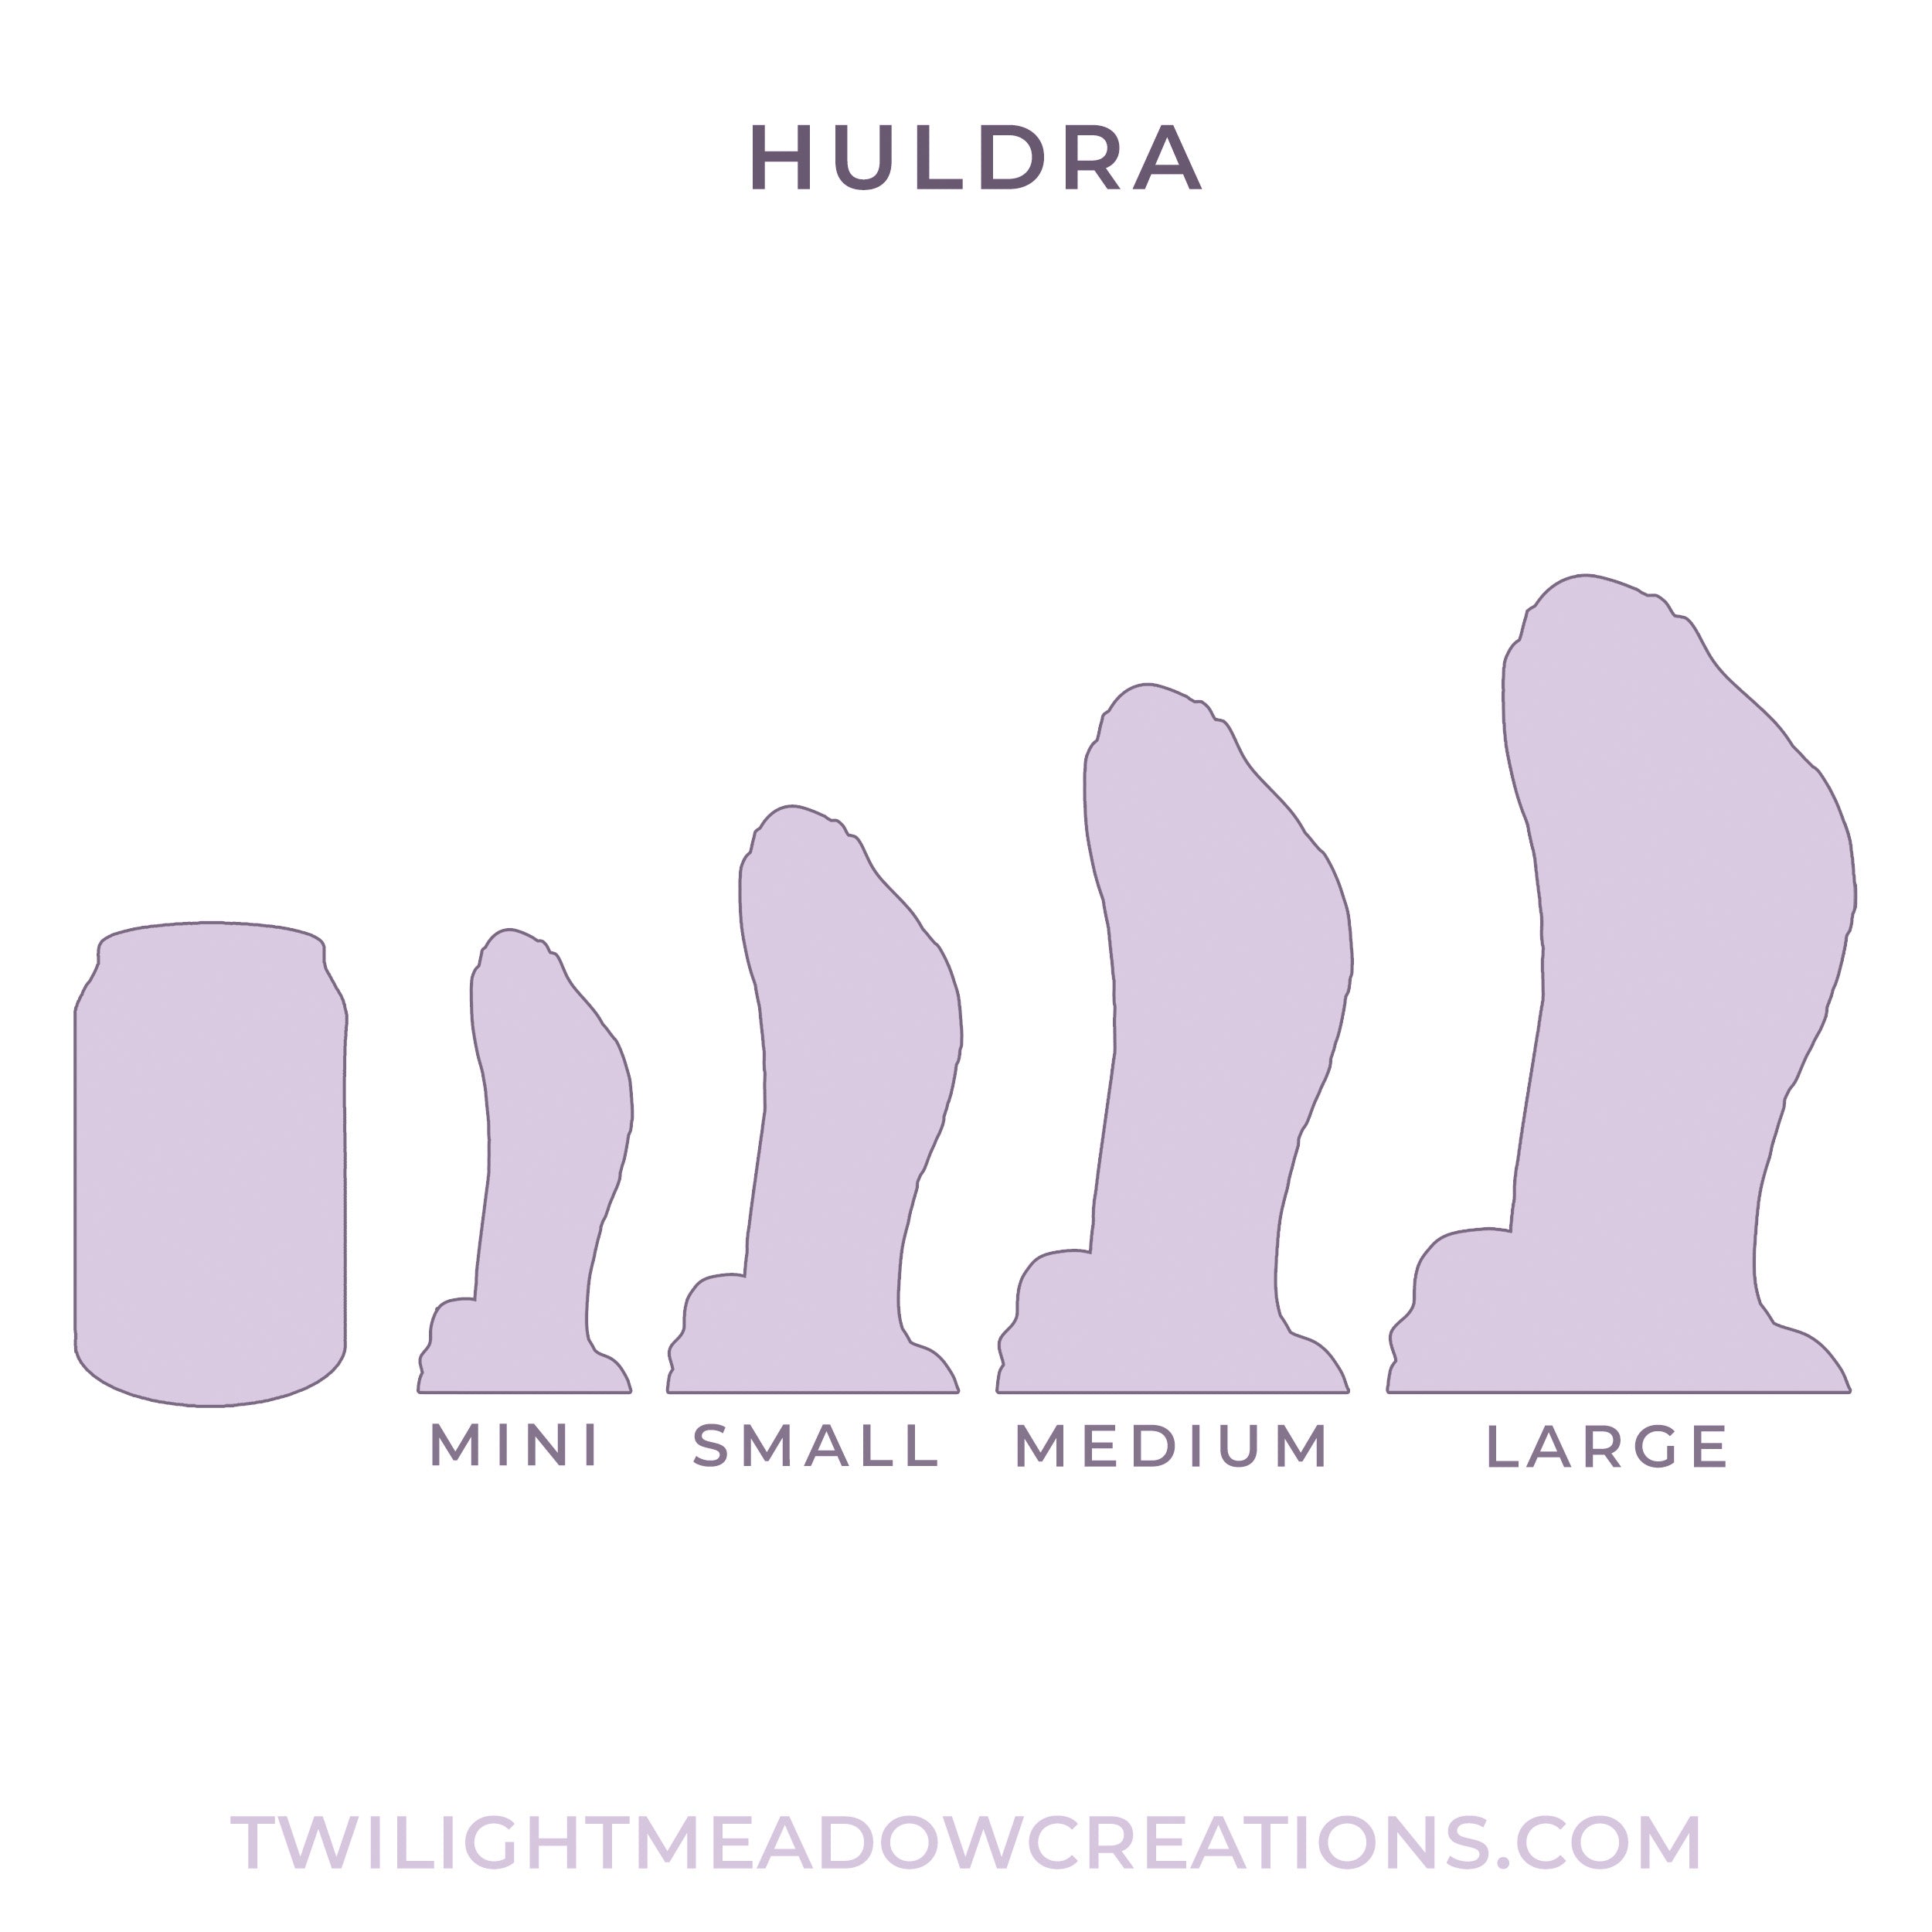 Crystalline Mini Huldra (Firmness: Soft*)